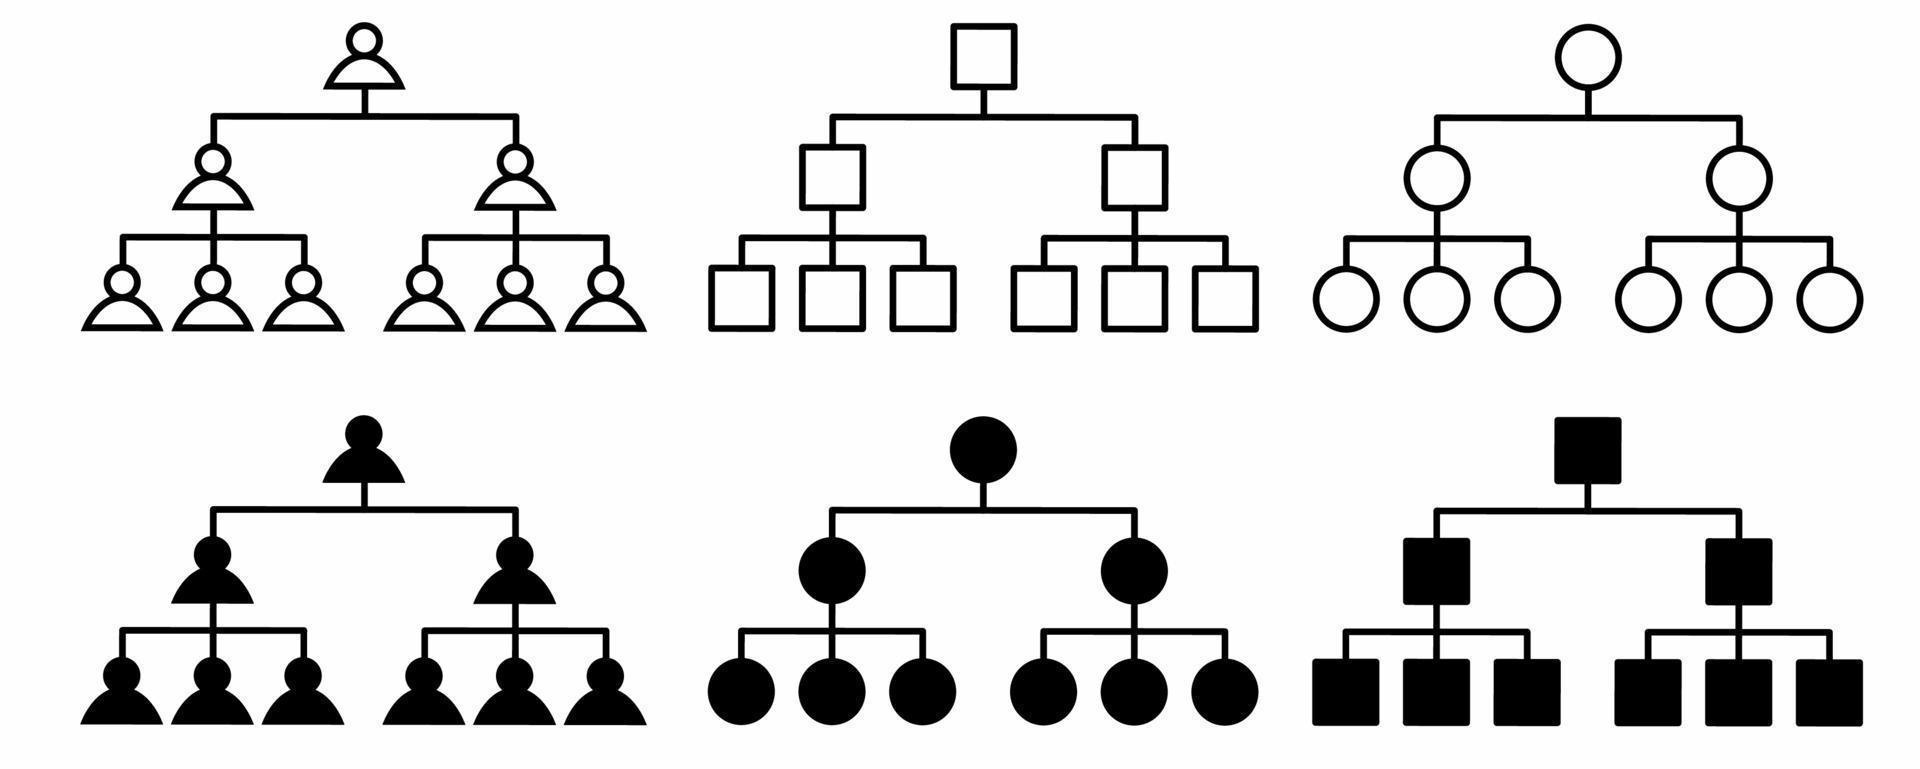 Umriss Silhouette Organisationsstruktur oder Stammbaum-Icon-Set isoliert auf weißem Hintergrund vektor